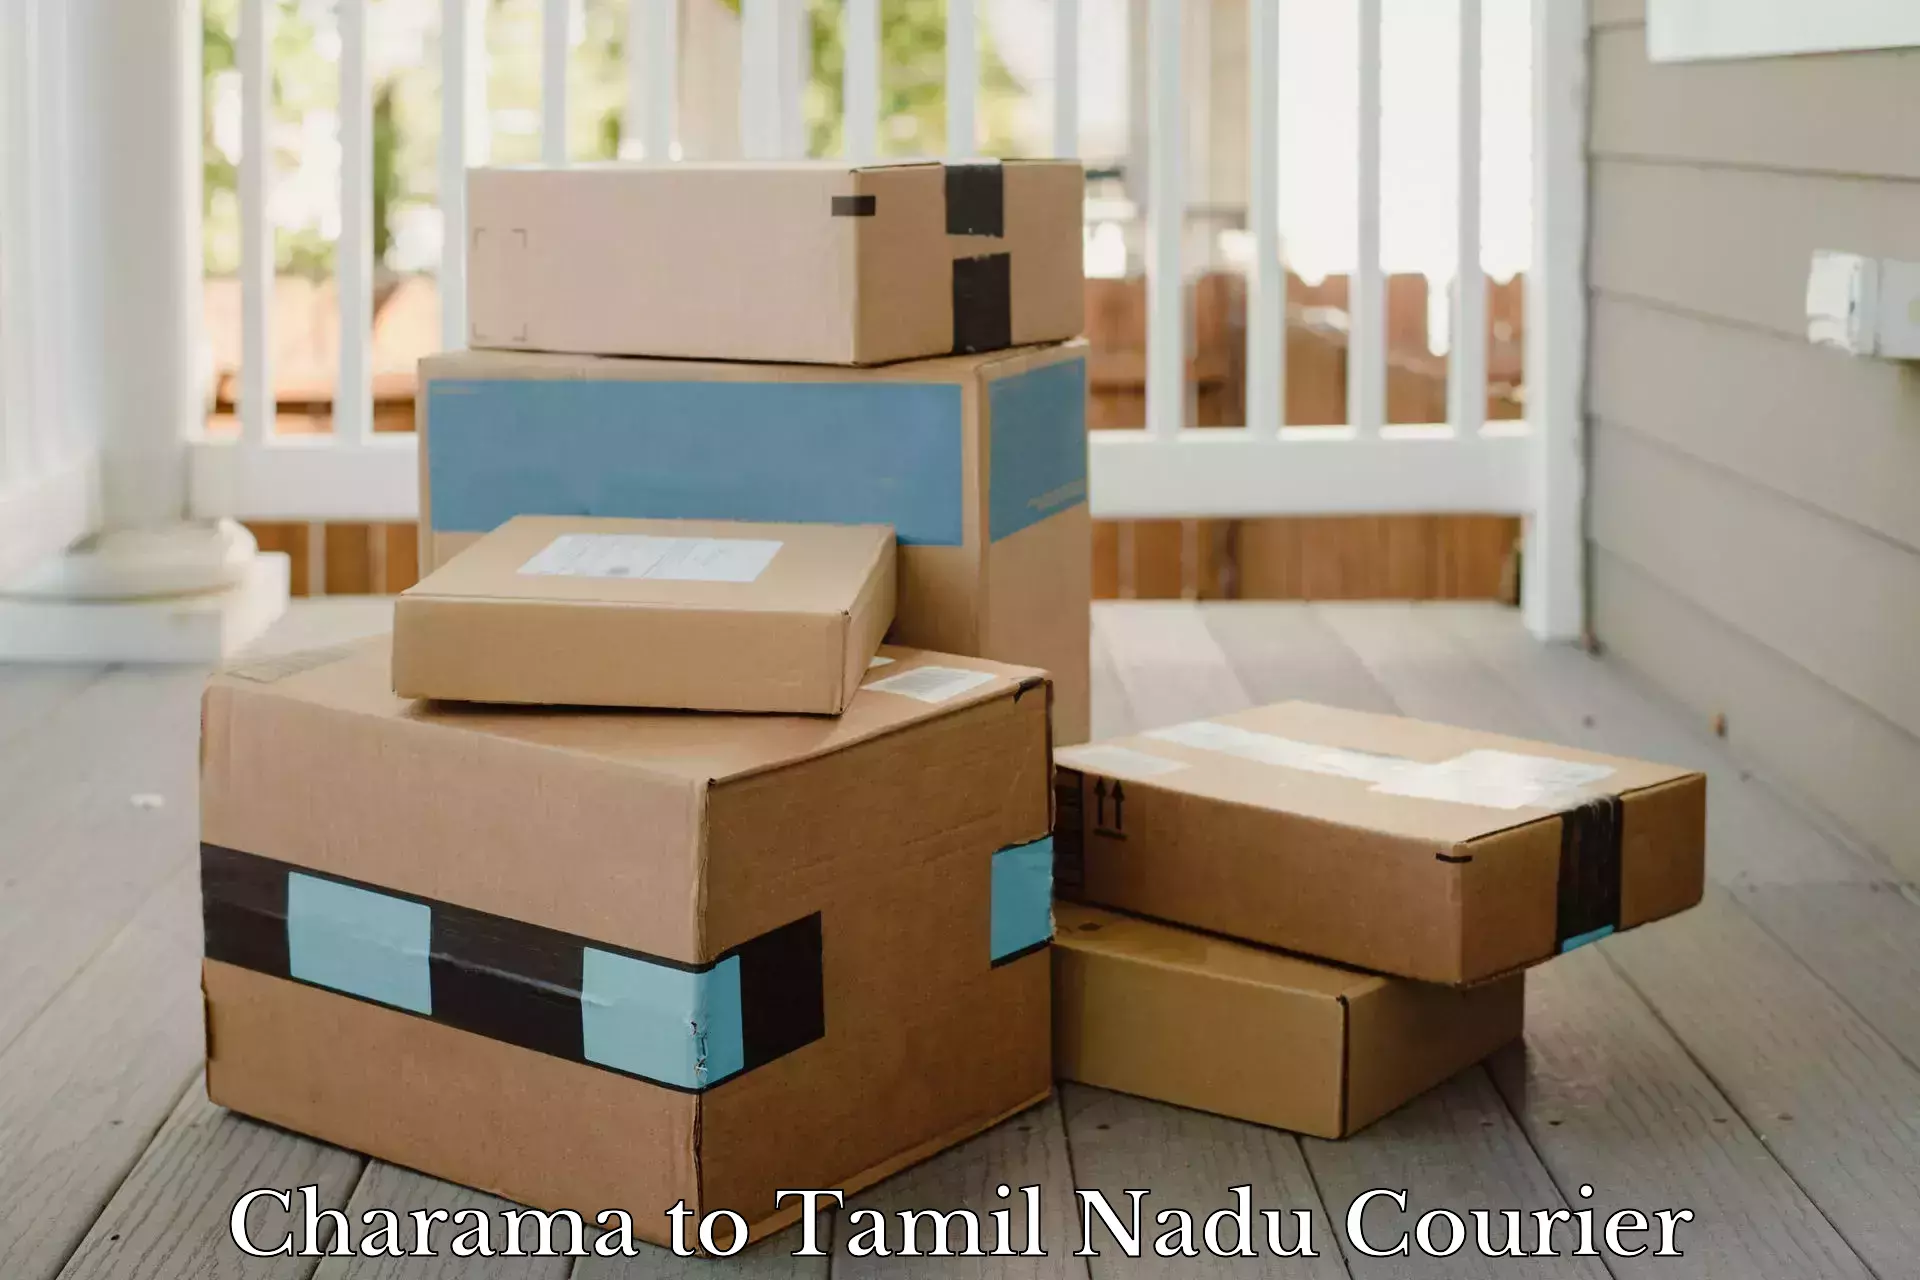 Smart shipping technology Charama to Thiruvadanai